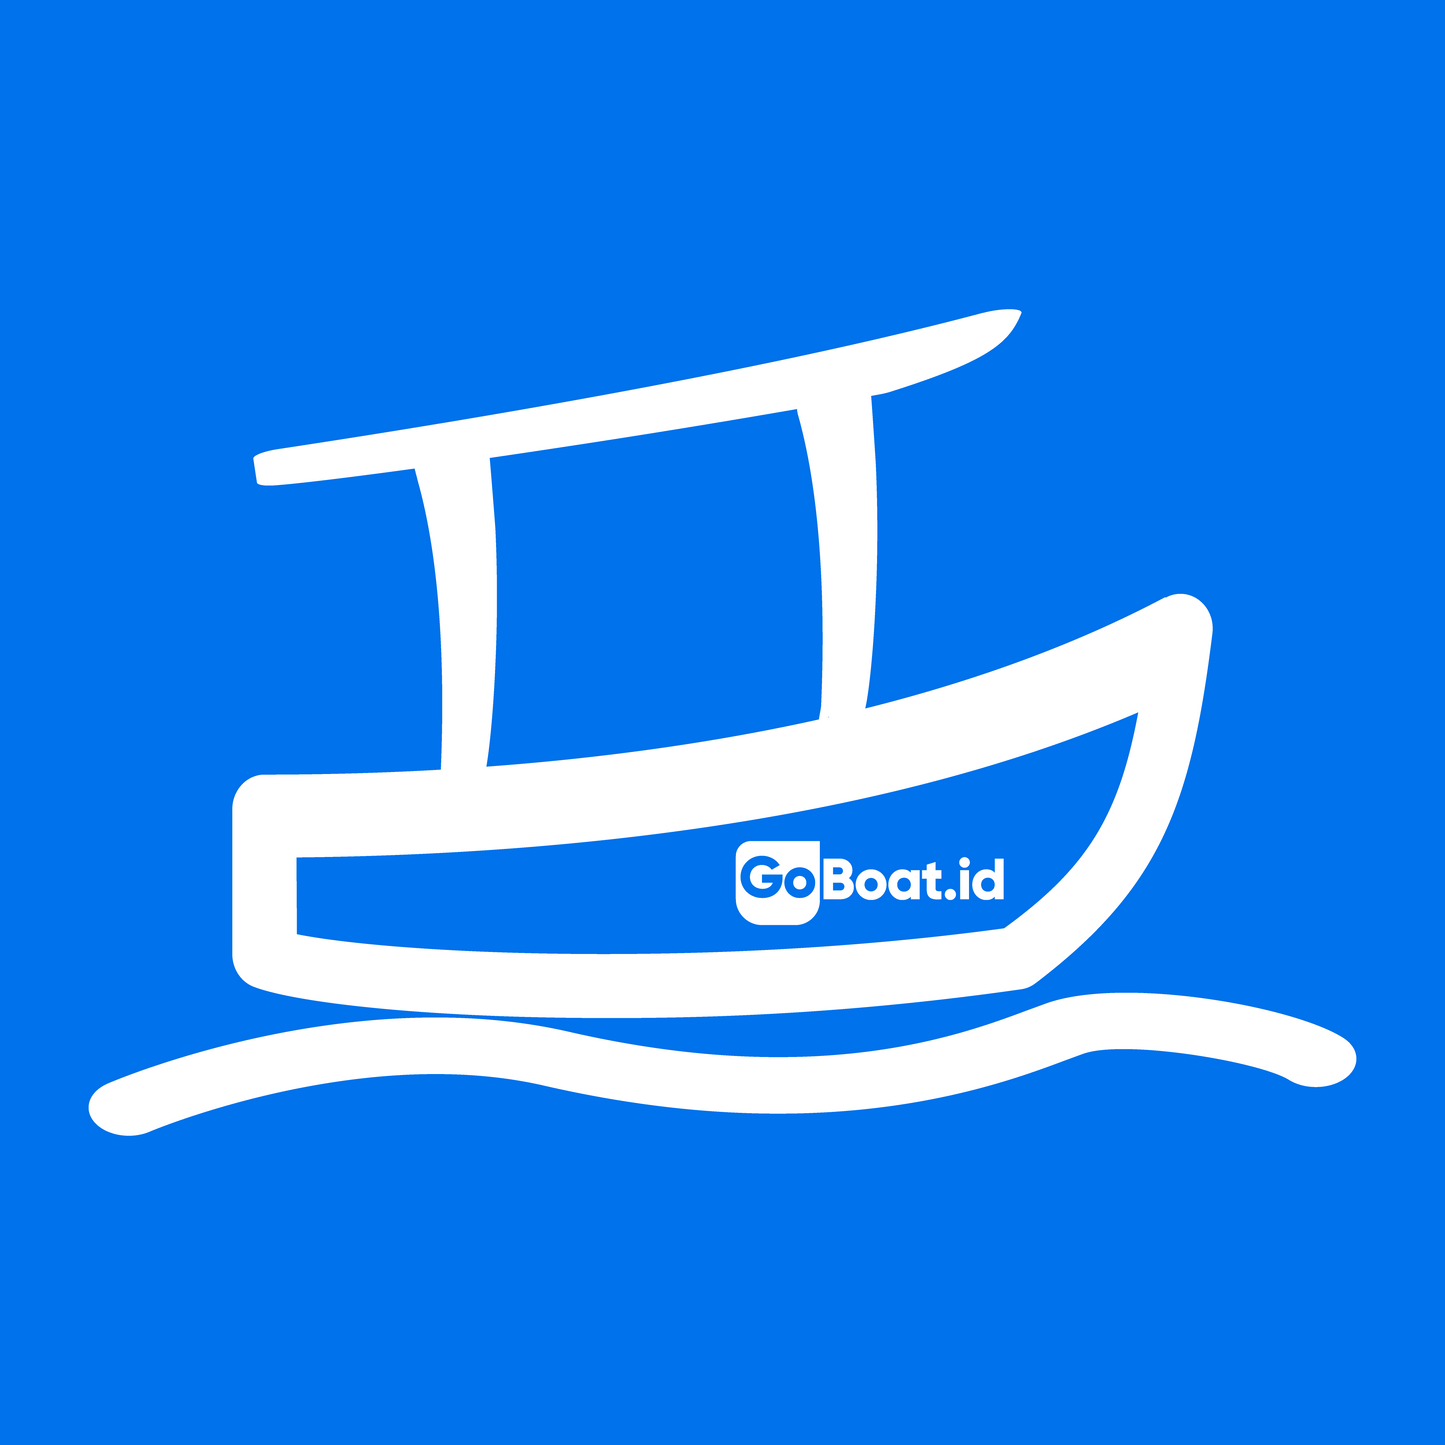 Canggu ➞ Uluwatu - GoBoat in 40 minutes, Skip the traffic, Go by boat